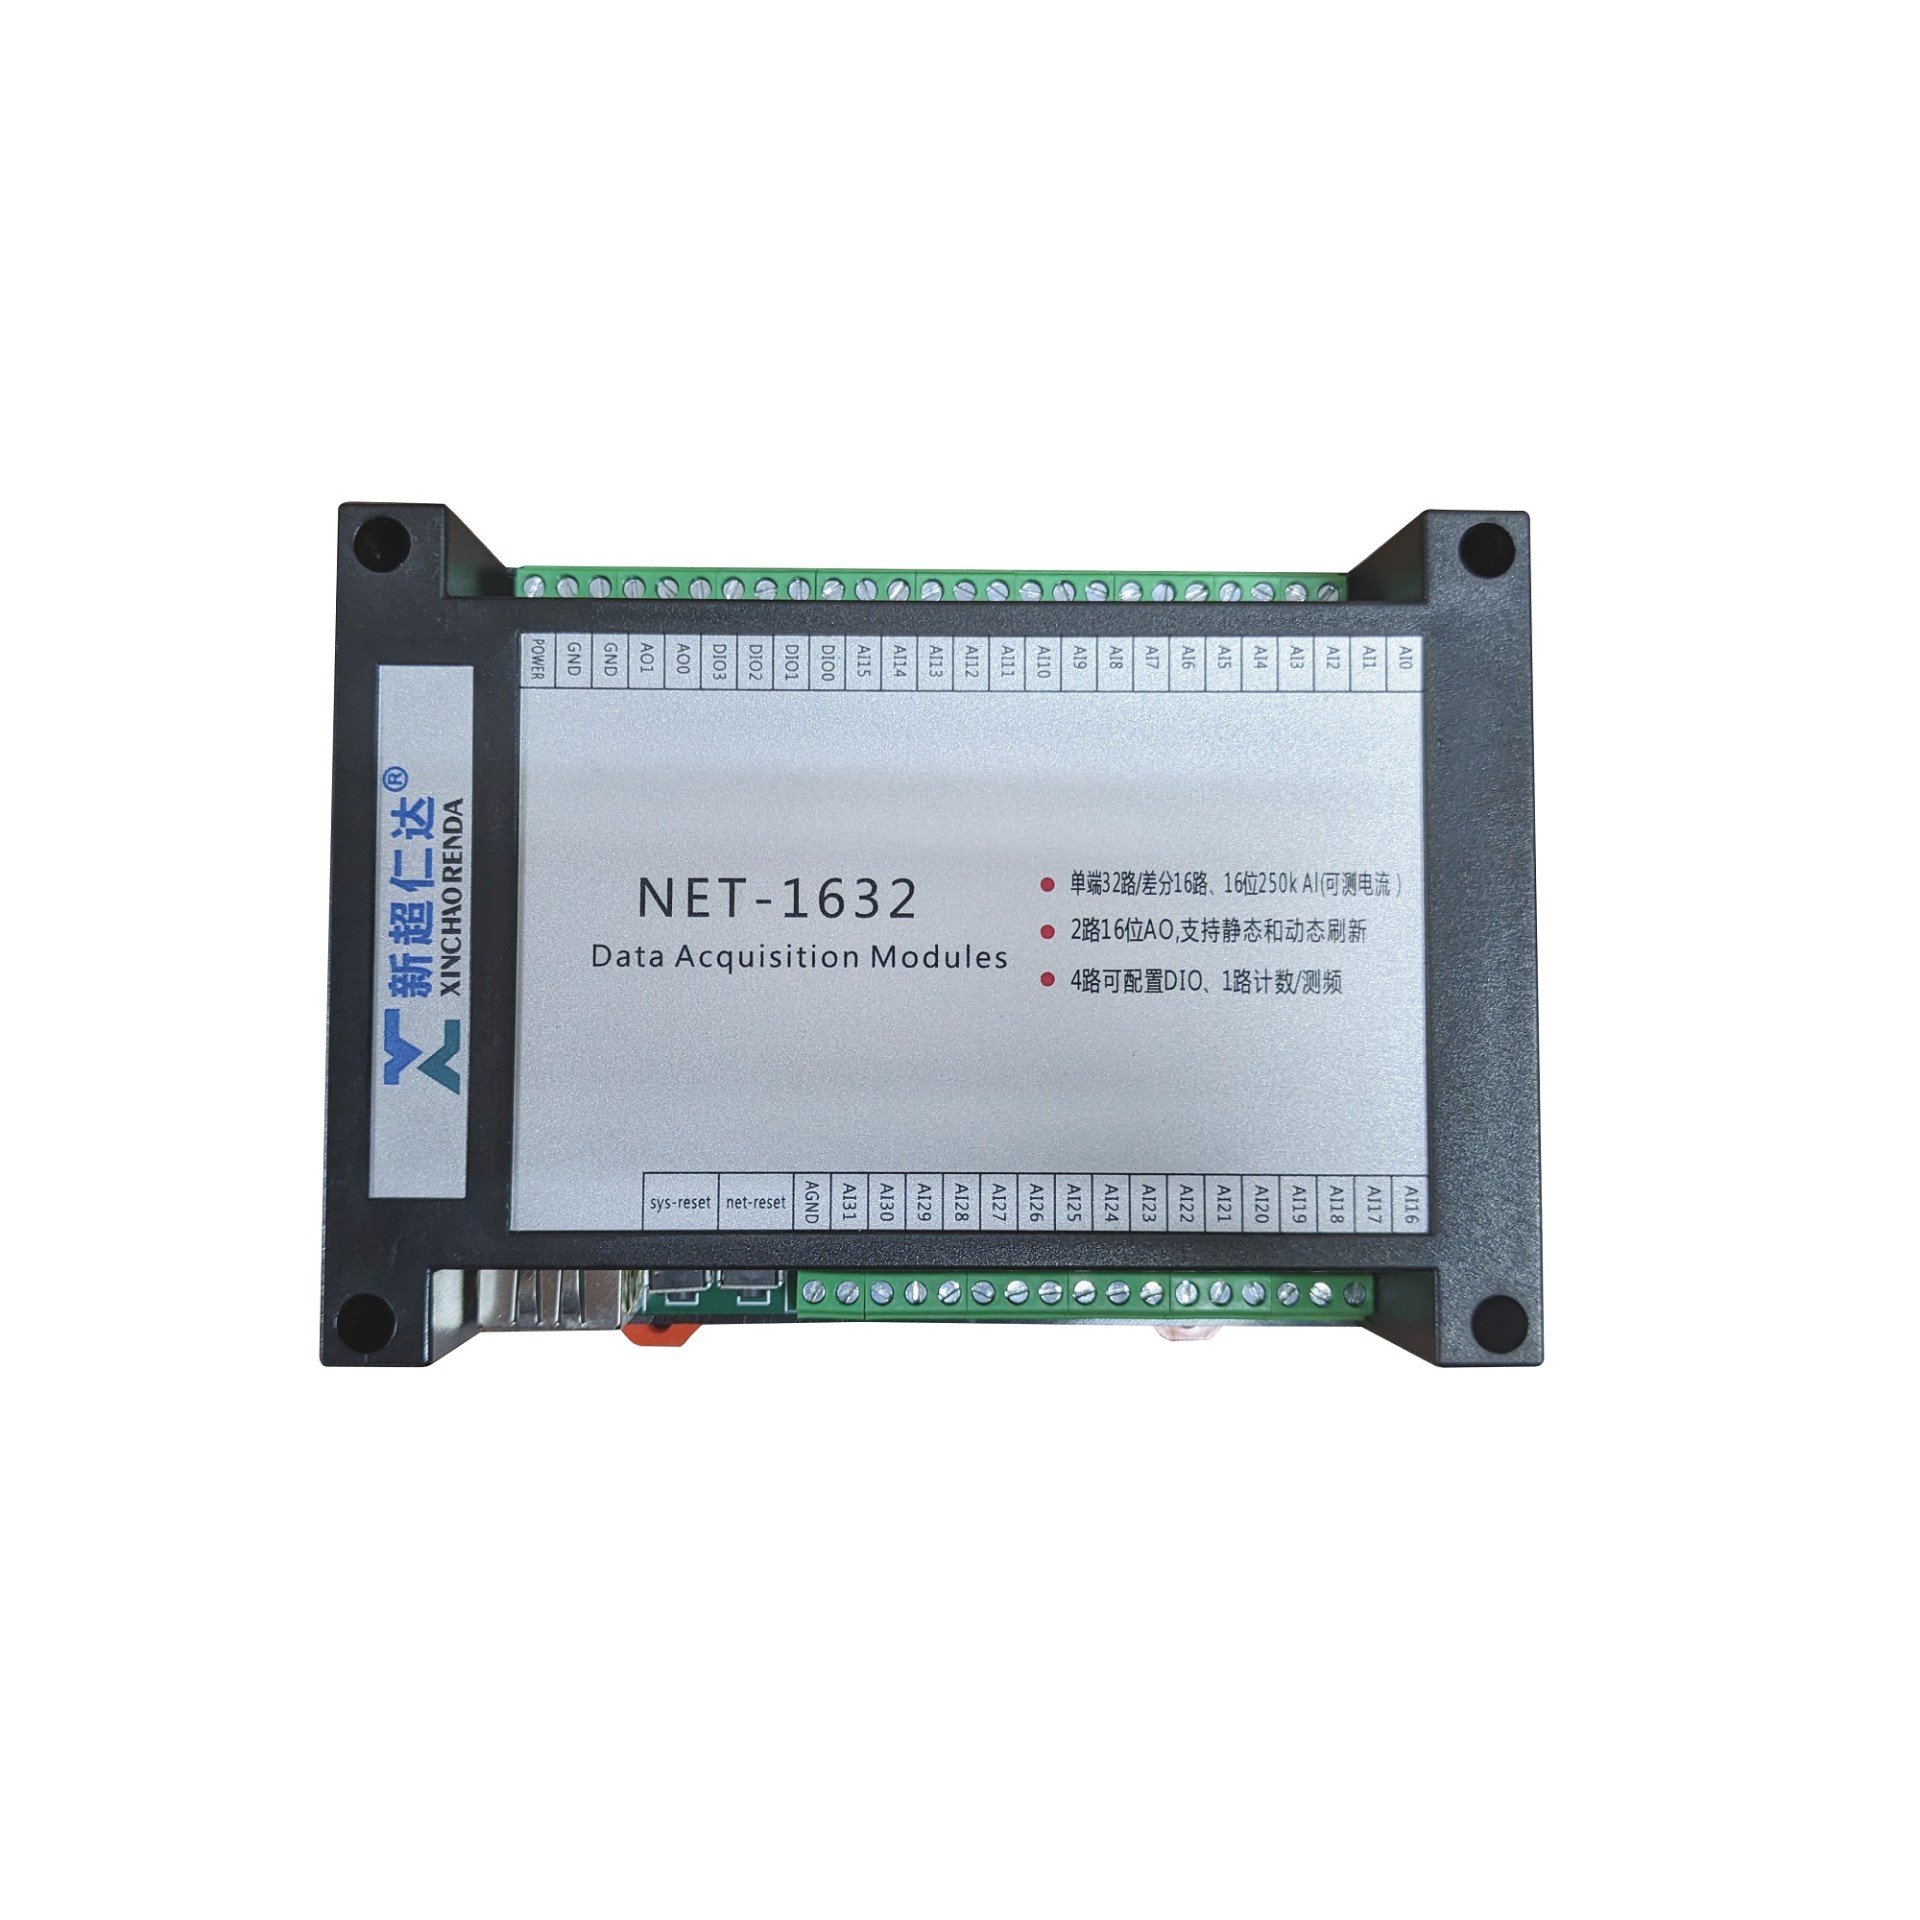 NET-1632